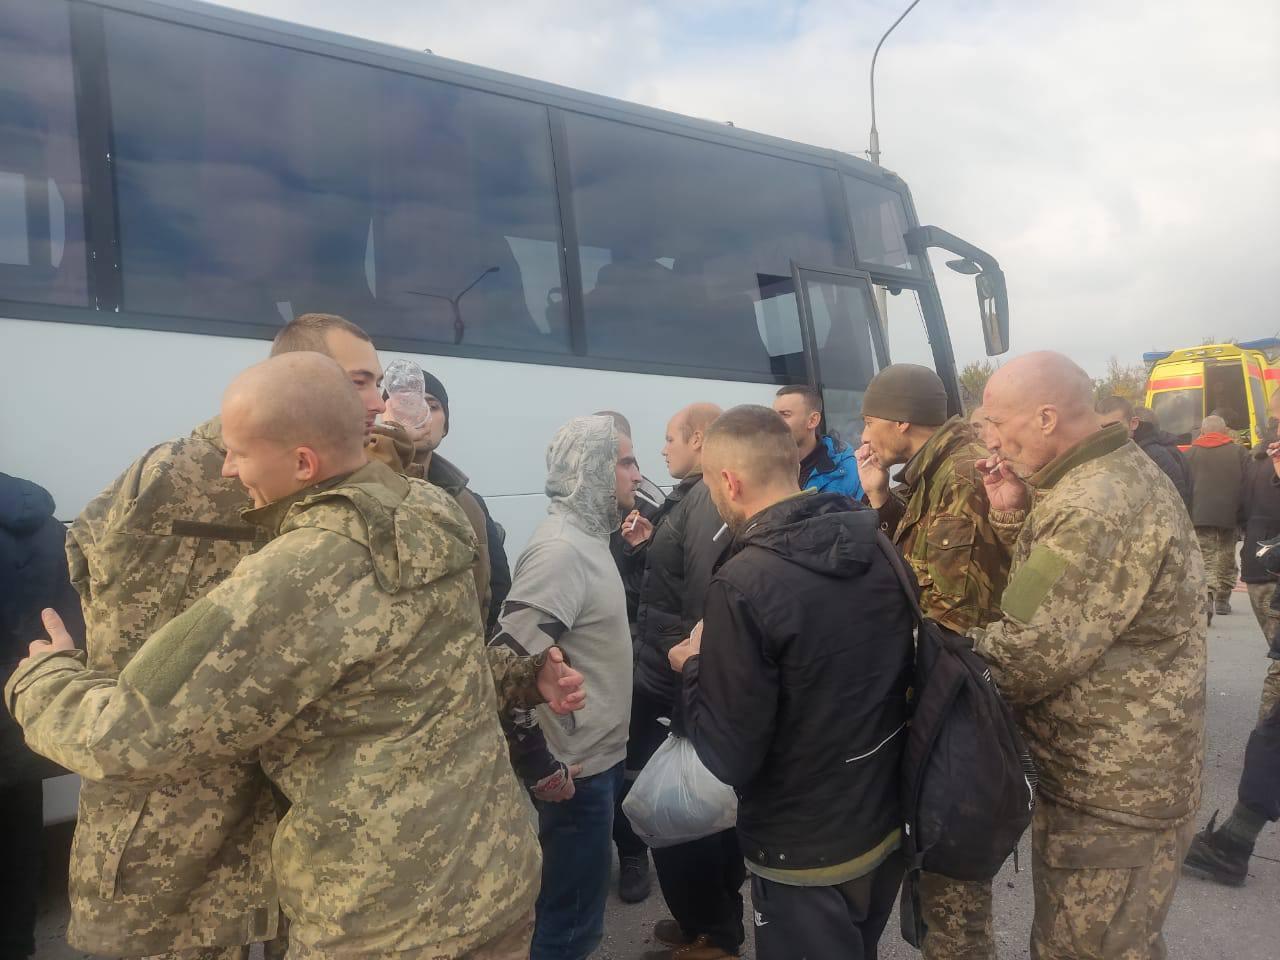 Україна з російського полону повернула ще 52 громадян